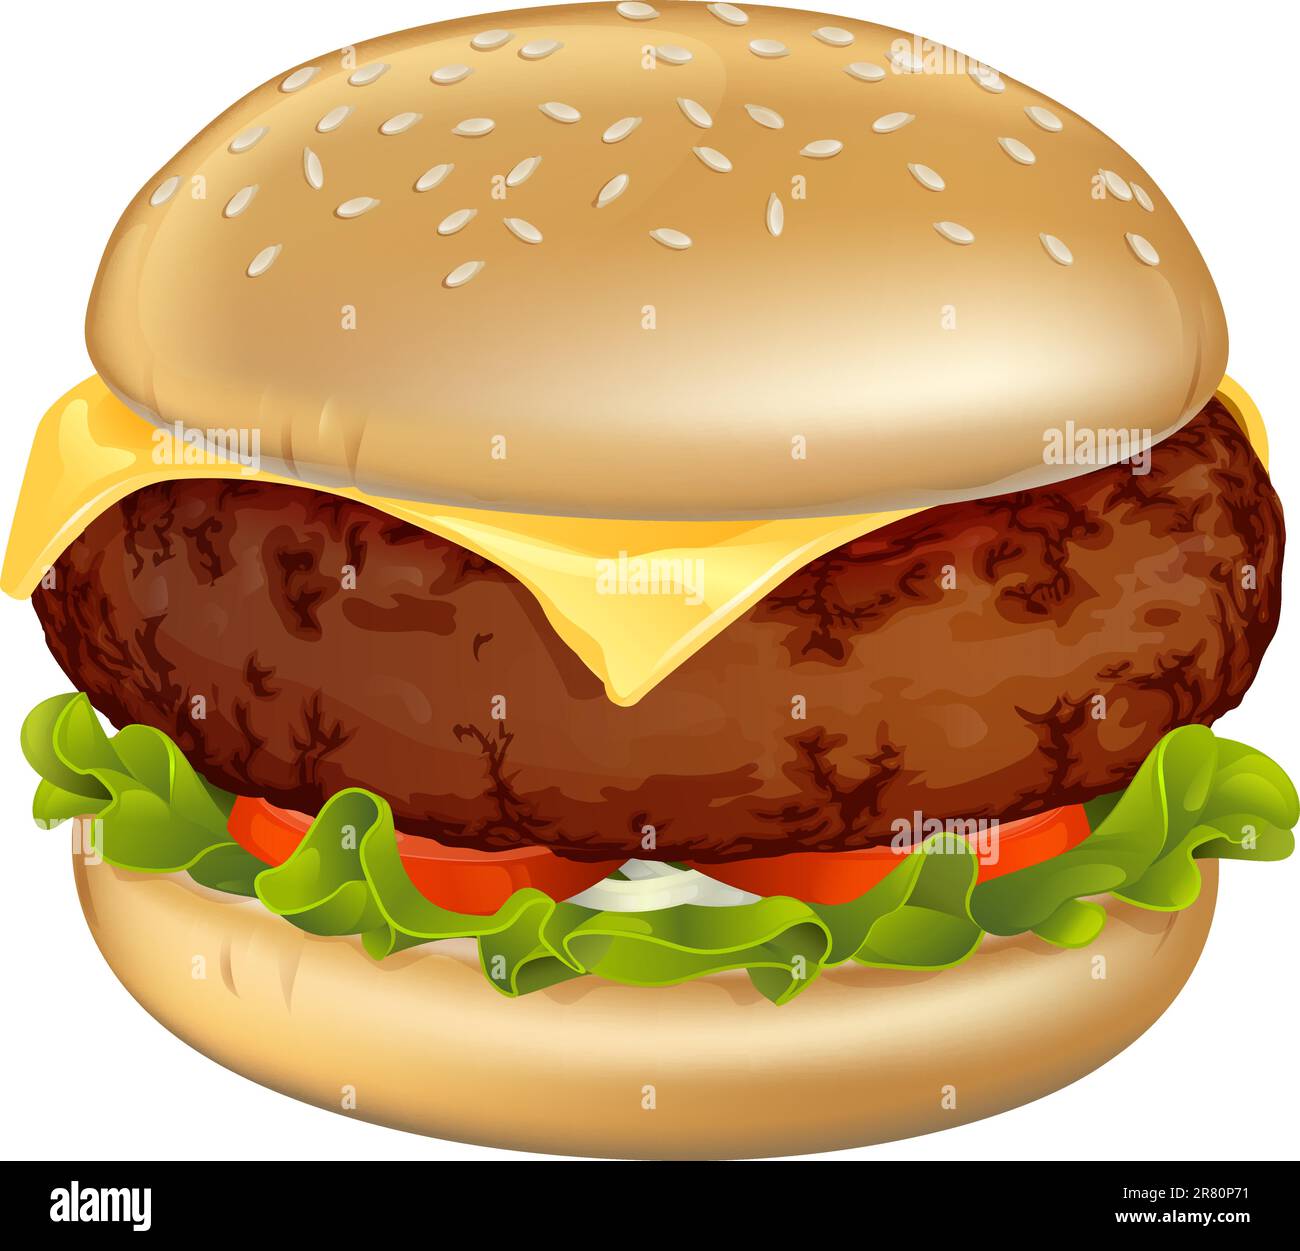 Illustration d'un délicieux à la viande bovine classique cheeseburger avec laitue, tomate et oignon Illustration de Vecteur